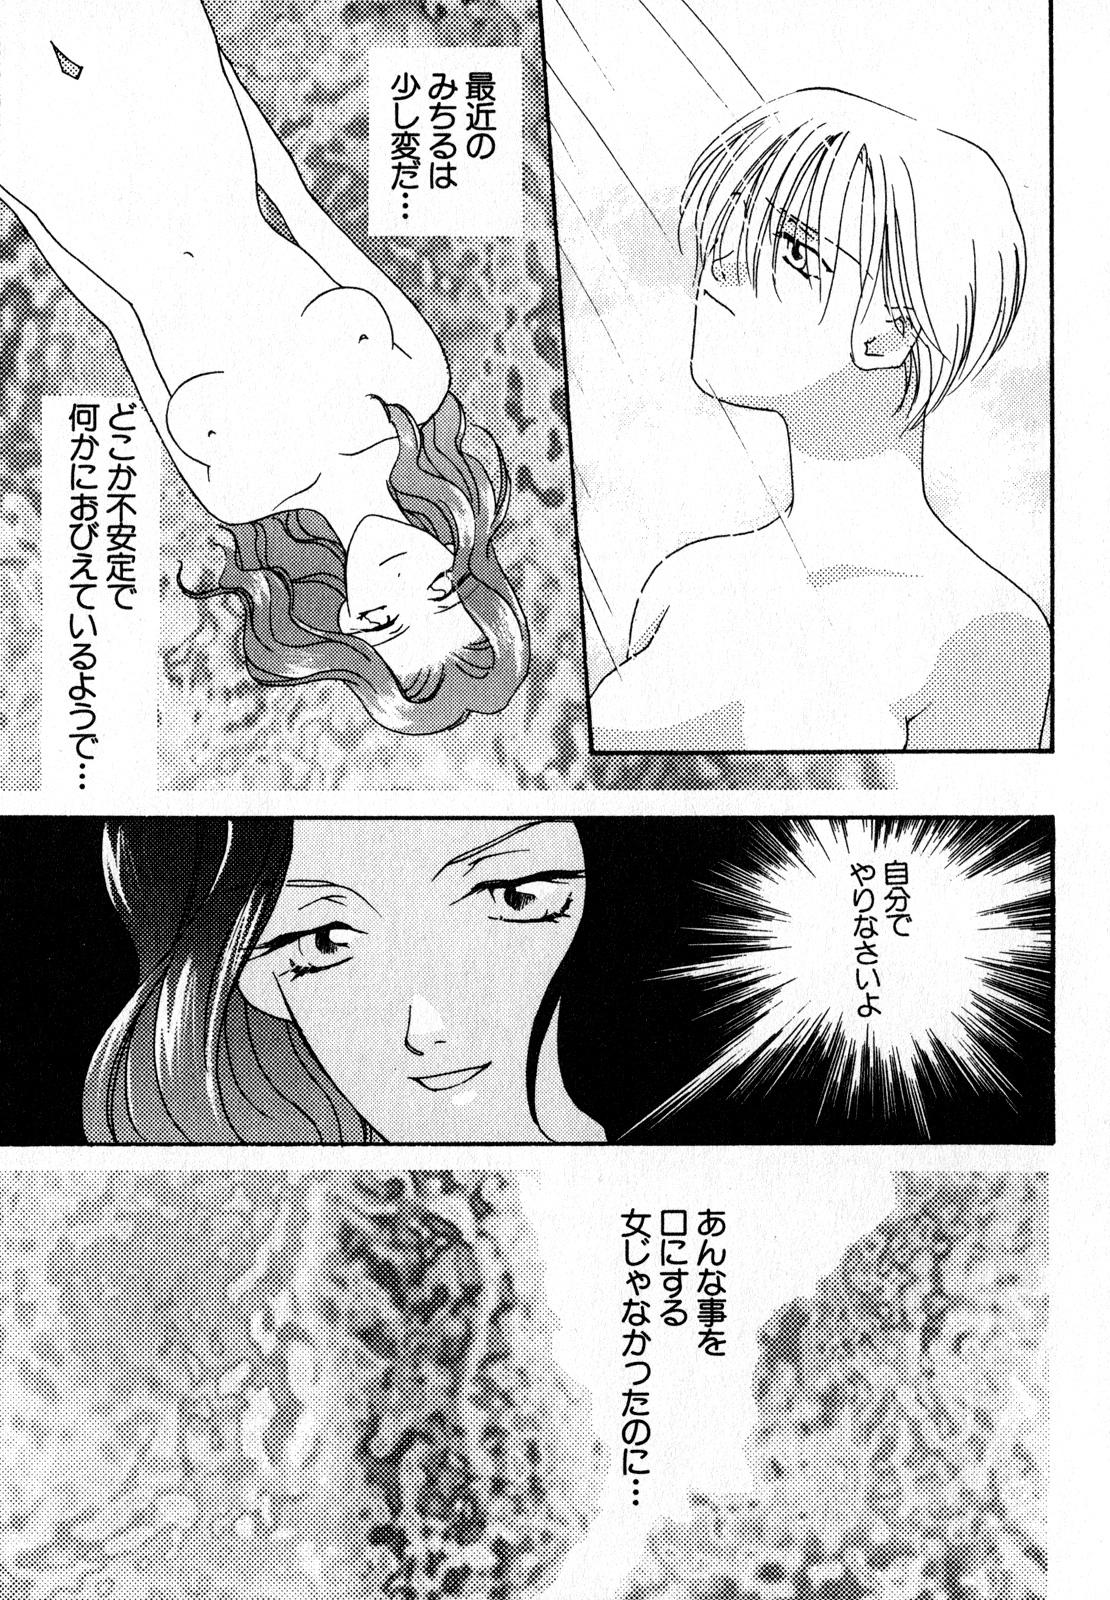 Fantasy Lunatic Party 7 - Sailor moon Piercing - Page 10